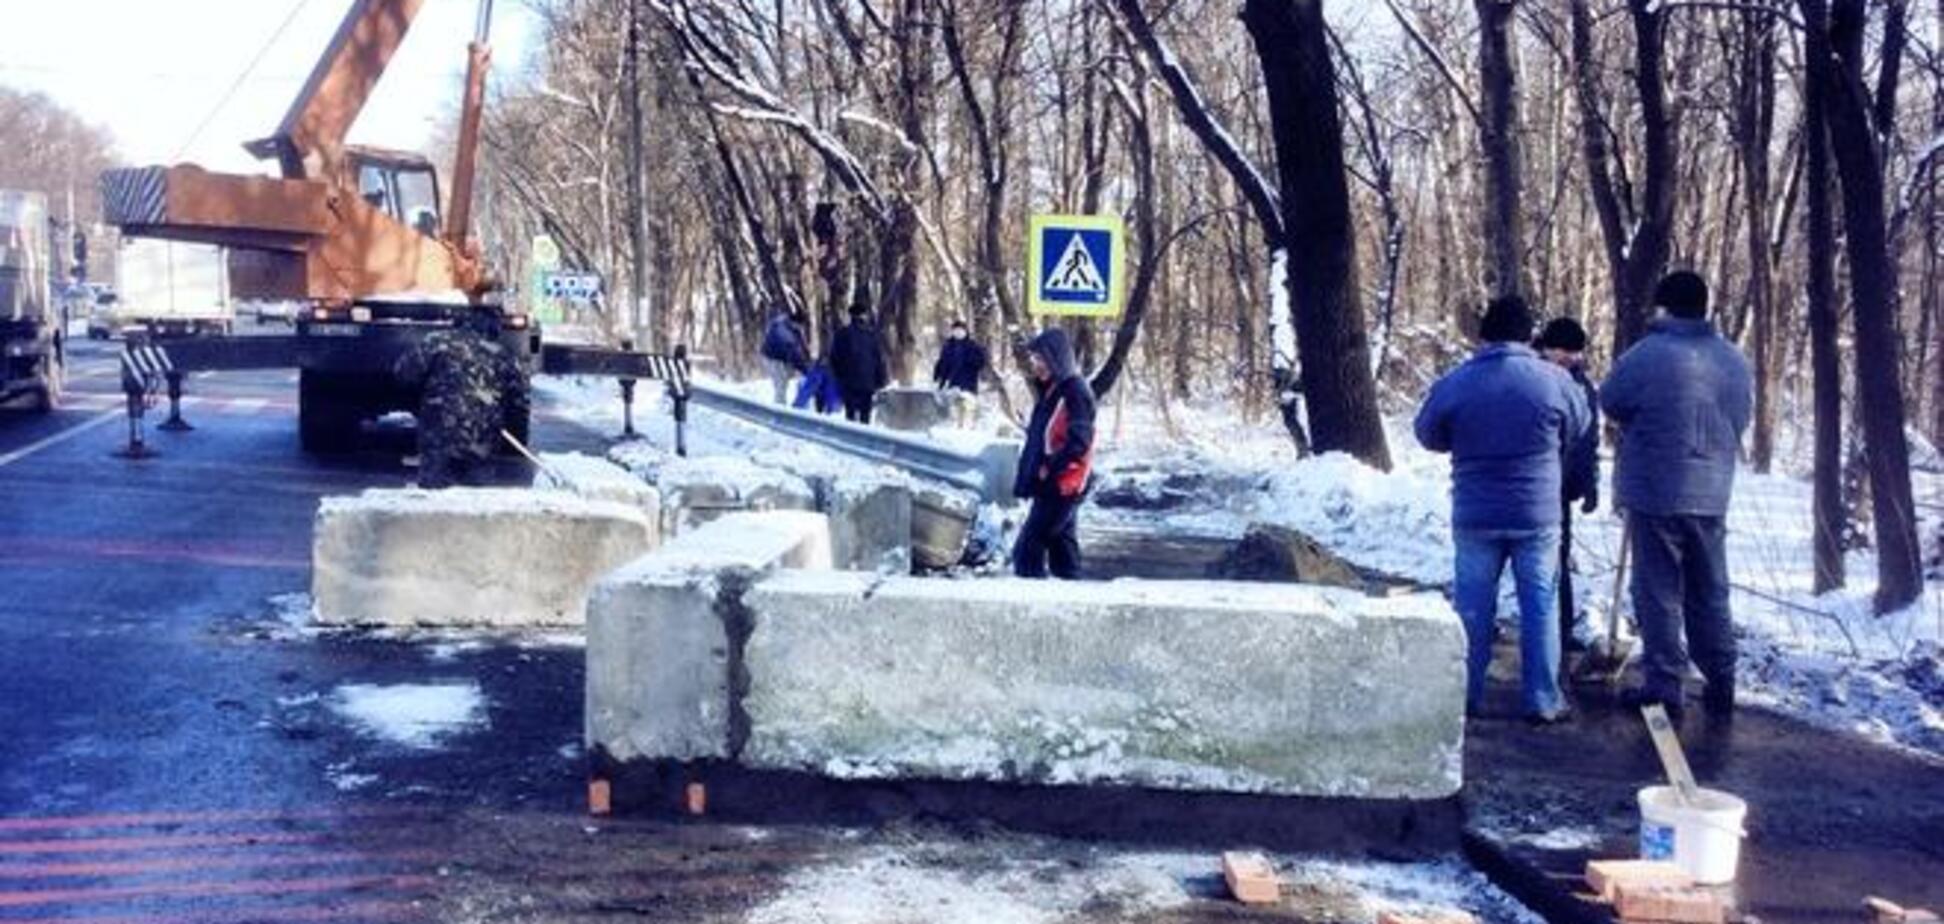 При въезде в Киев предприниматели построили новый блокпост